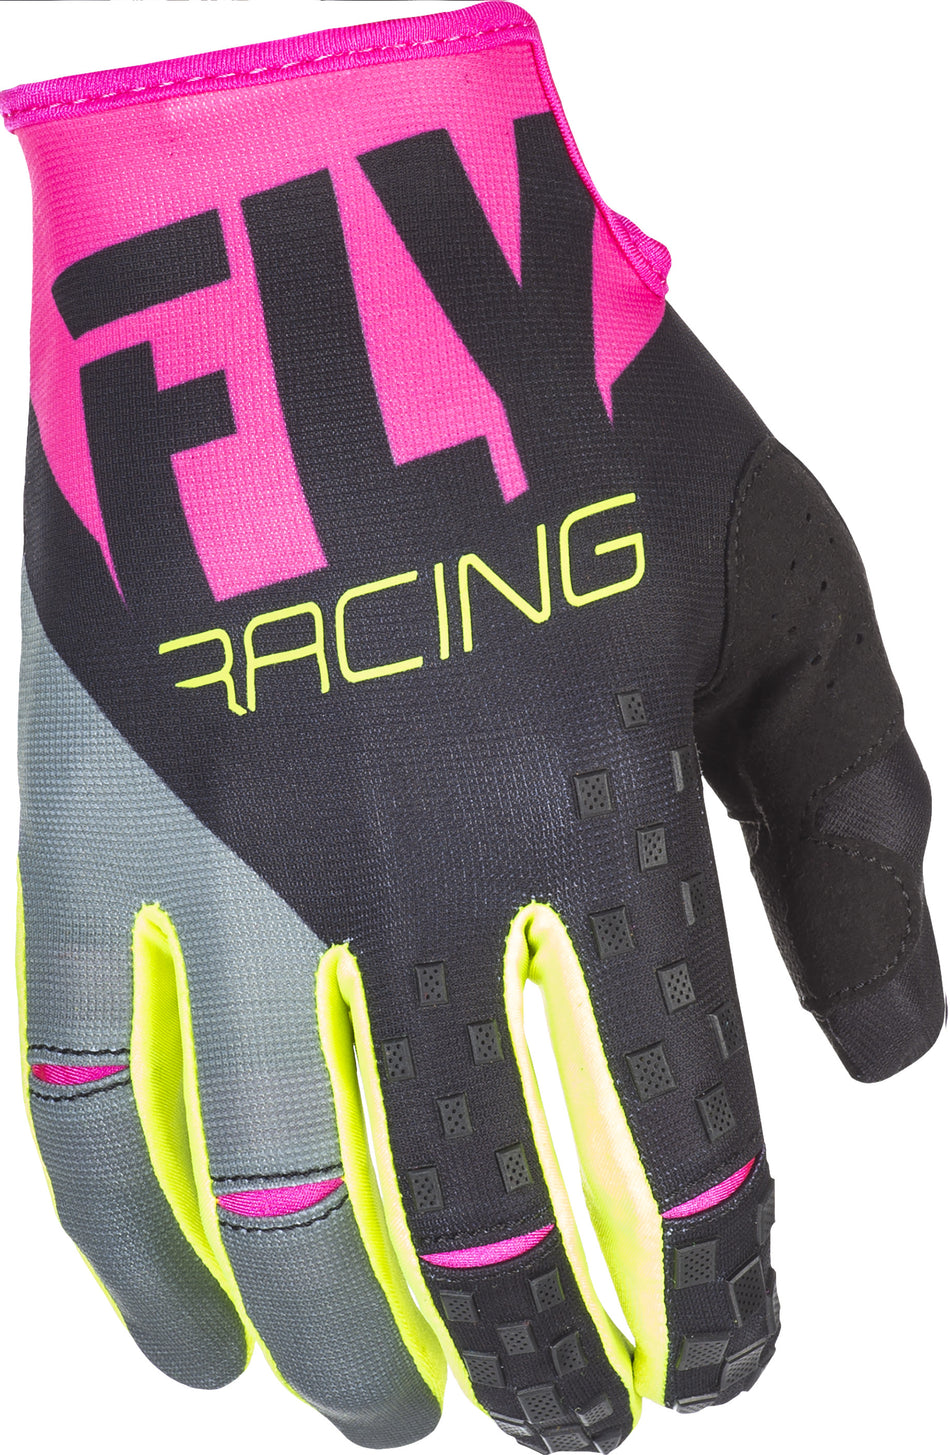 FLY RACING Kinetic Gloves Neon Pink/Black/Hi-Vis Sz 5 371-41905